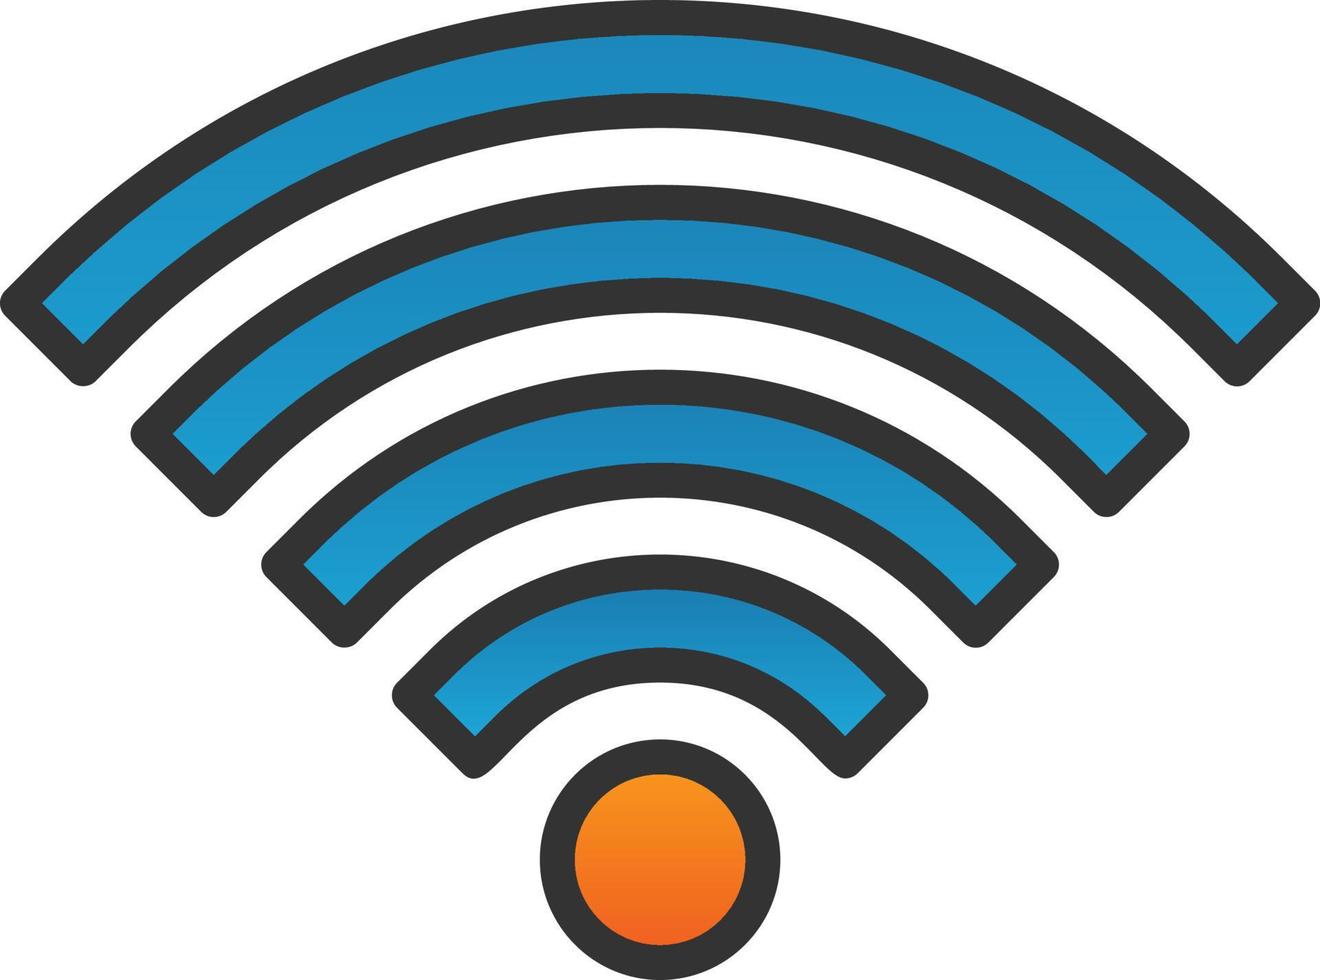 Wi-Fi vettore icona design